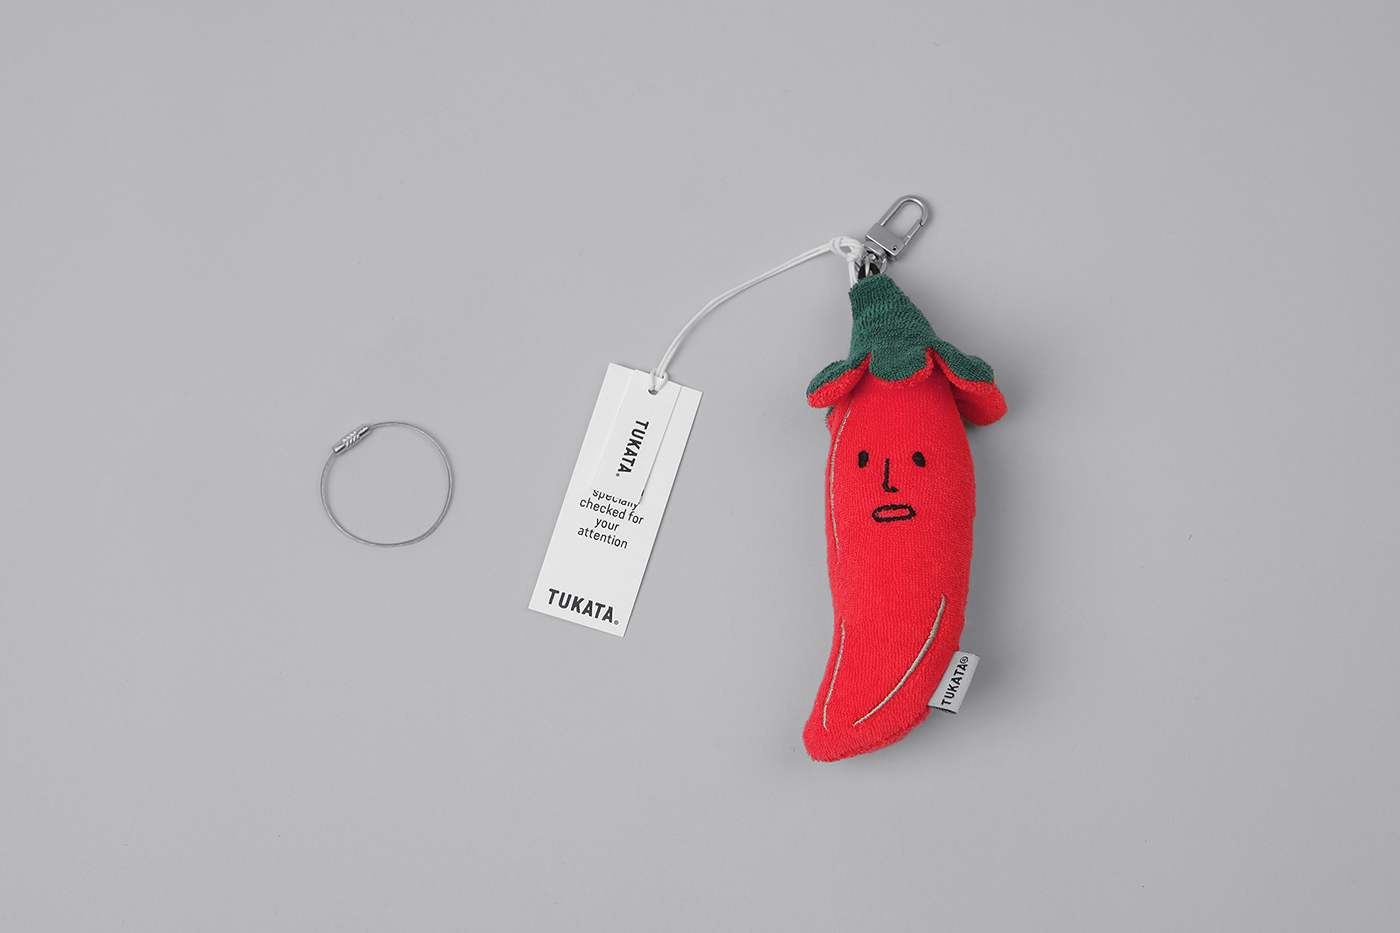 TUKATA doll lifestyle branding  Packaging logo material vegetable object